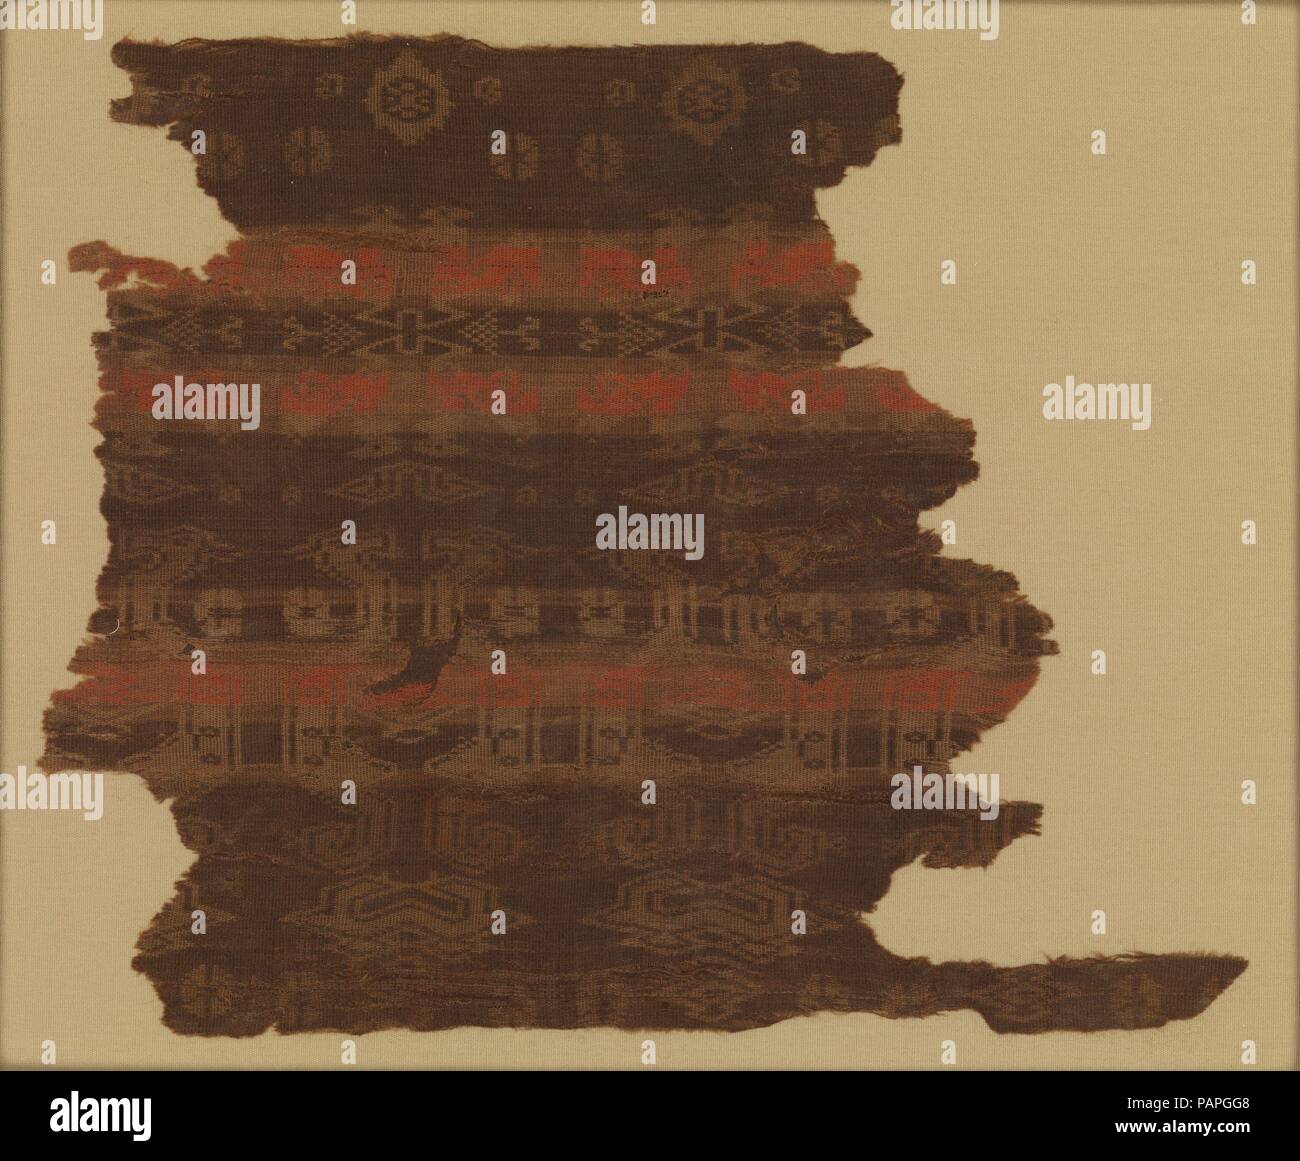 WovenTextile (Detail). Kultur: China. Abmessungen: Insgesamt (nach Erhalt): 7 3/4 x 6 in. (19,7 x 15,2 cm) Berg (mit plexi Deckel): 10 1/8 x 11 5/8 in. (25,7 x 29,5 cm) Insgesamt (vor Erhaltung): 6 x 6 11/16 in. (15,3 x 17 cm). Die älteste chinesische Textilien aus der Sammlung des Museums (2002.558, 559), diese beiden Fragmente mit einem Muster von geometrischen Motiven und Vögel oder dragonlike Tiere stammen aus der gleichen Länge der Seide gewebt. Die Streifen, wahrscheinlich gefärbt mit Zinnober, behalten Sie eine frische rote Farbe. Zinnober wurde in China bereits drei bis vier tausend Jahren abgebaut und hat Foun. Stockfoto